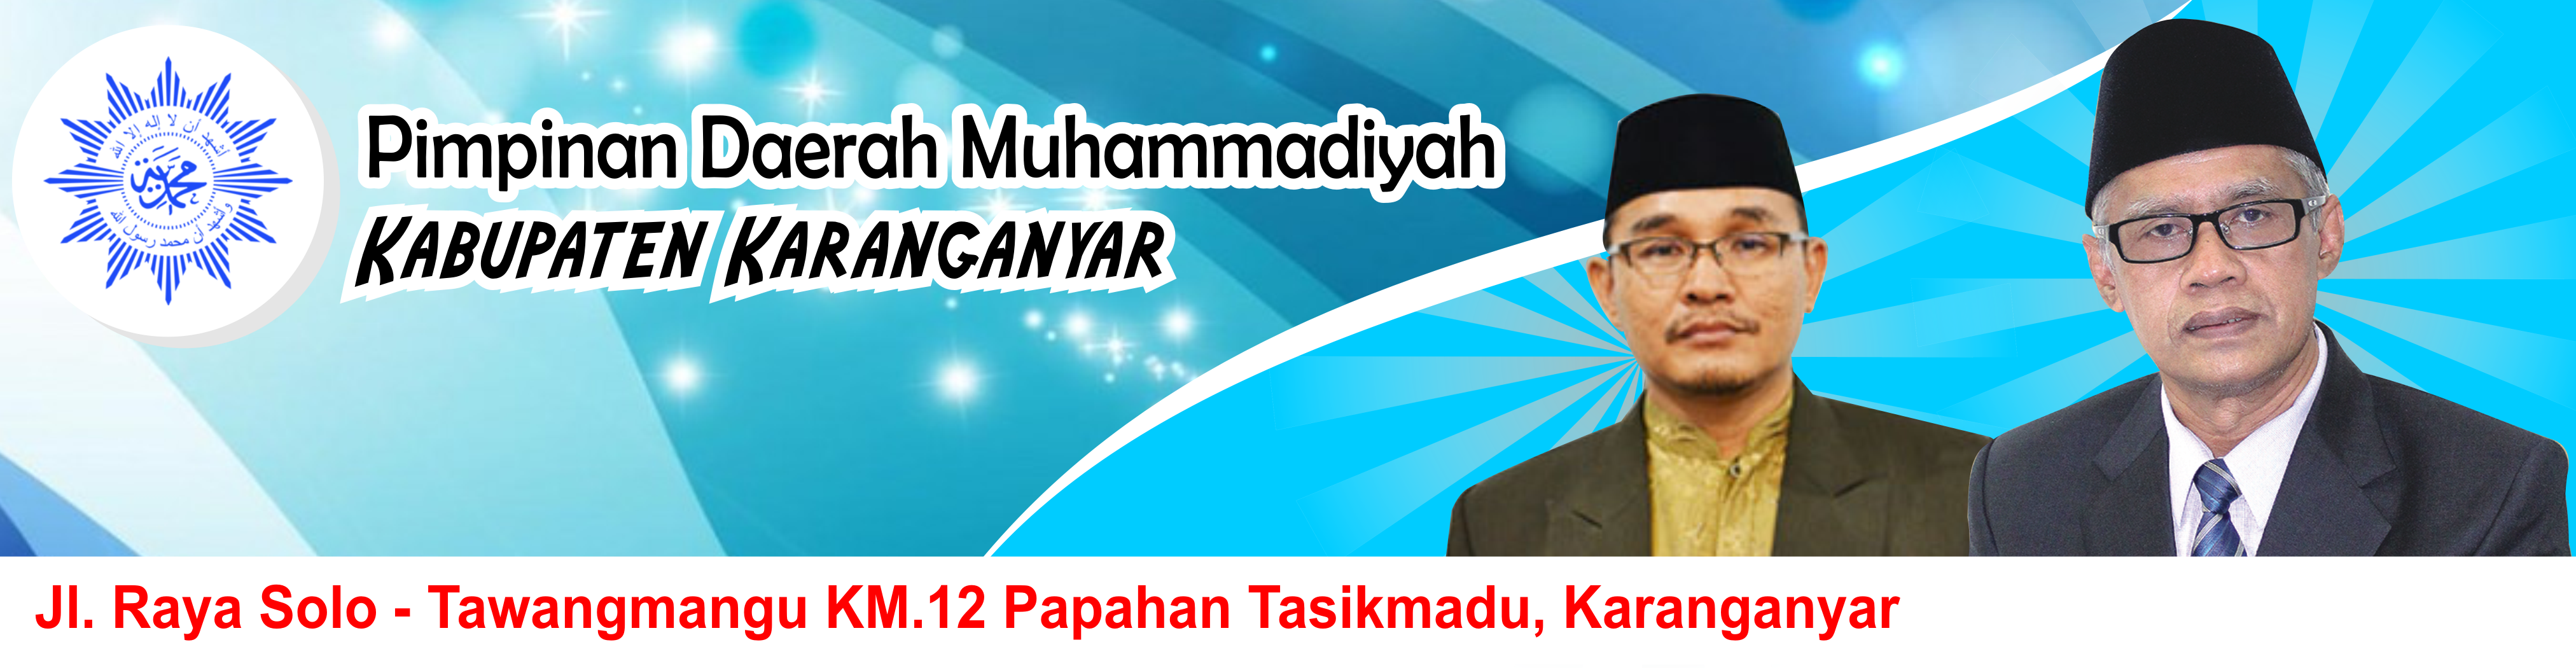 Majelis Pelayanan Sosial Pimpinan Daerah Muhammadiyah Kabupaten Karanganyar